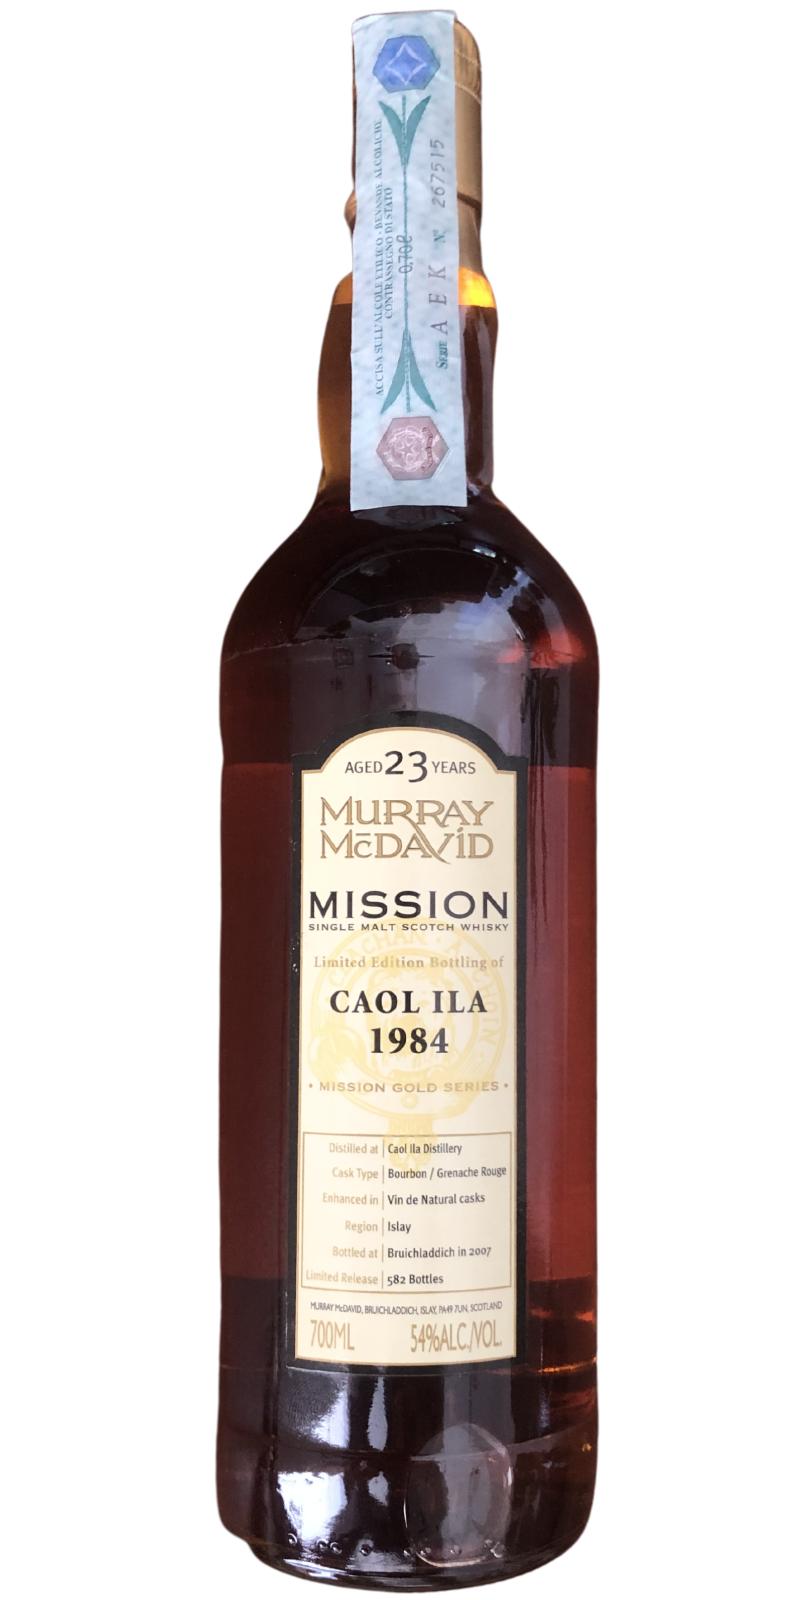 Caol Ila 1984 MM Mission Gold Series Bourbon Grenache Rouge Enhanced in wine de Natural Casks 54% 700ml